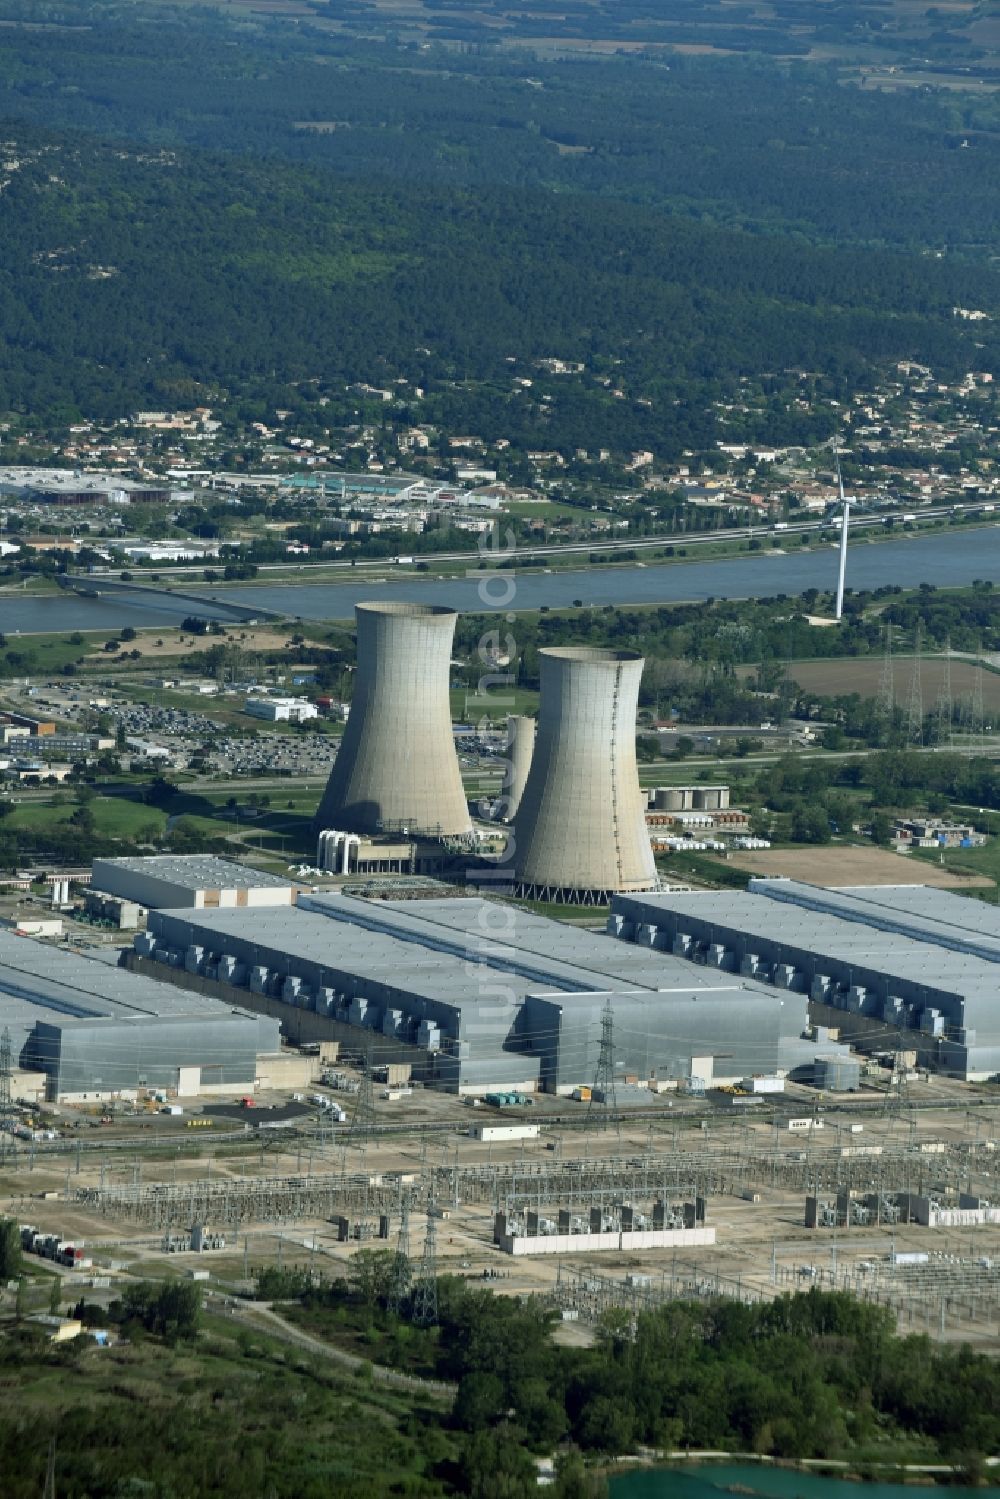 Luftbild Saint-Paul-Trois-Châteaux - Reaktorblöcke und Anlagen des AKW - KKW Kernkraftwerk Tricastin in Saint-Paul-Trois-Châteaux in Auvergne Rhone-Alpes, Frankreich